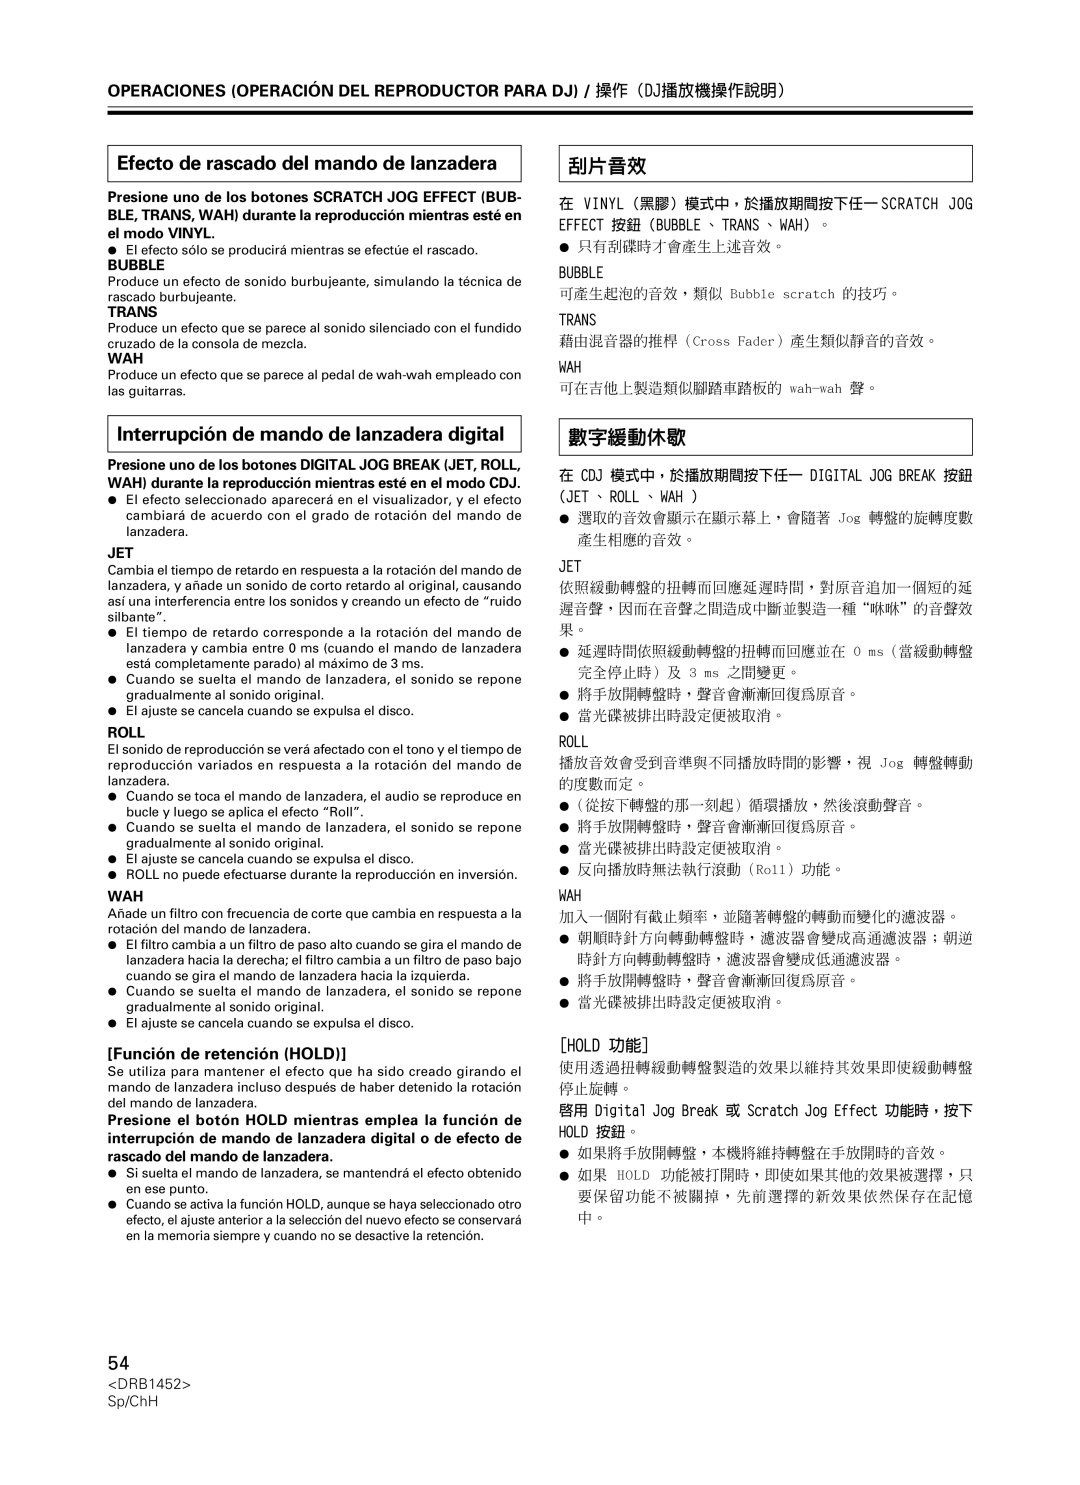 Pioneer CDJ-400 manual Efecto de rascado del mando de lanzadera, Interrupción de mando de lanzadera digital, Hold 功能, 刮片音效 